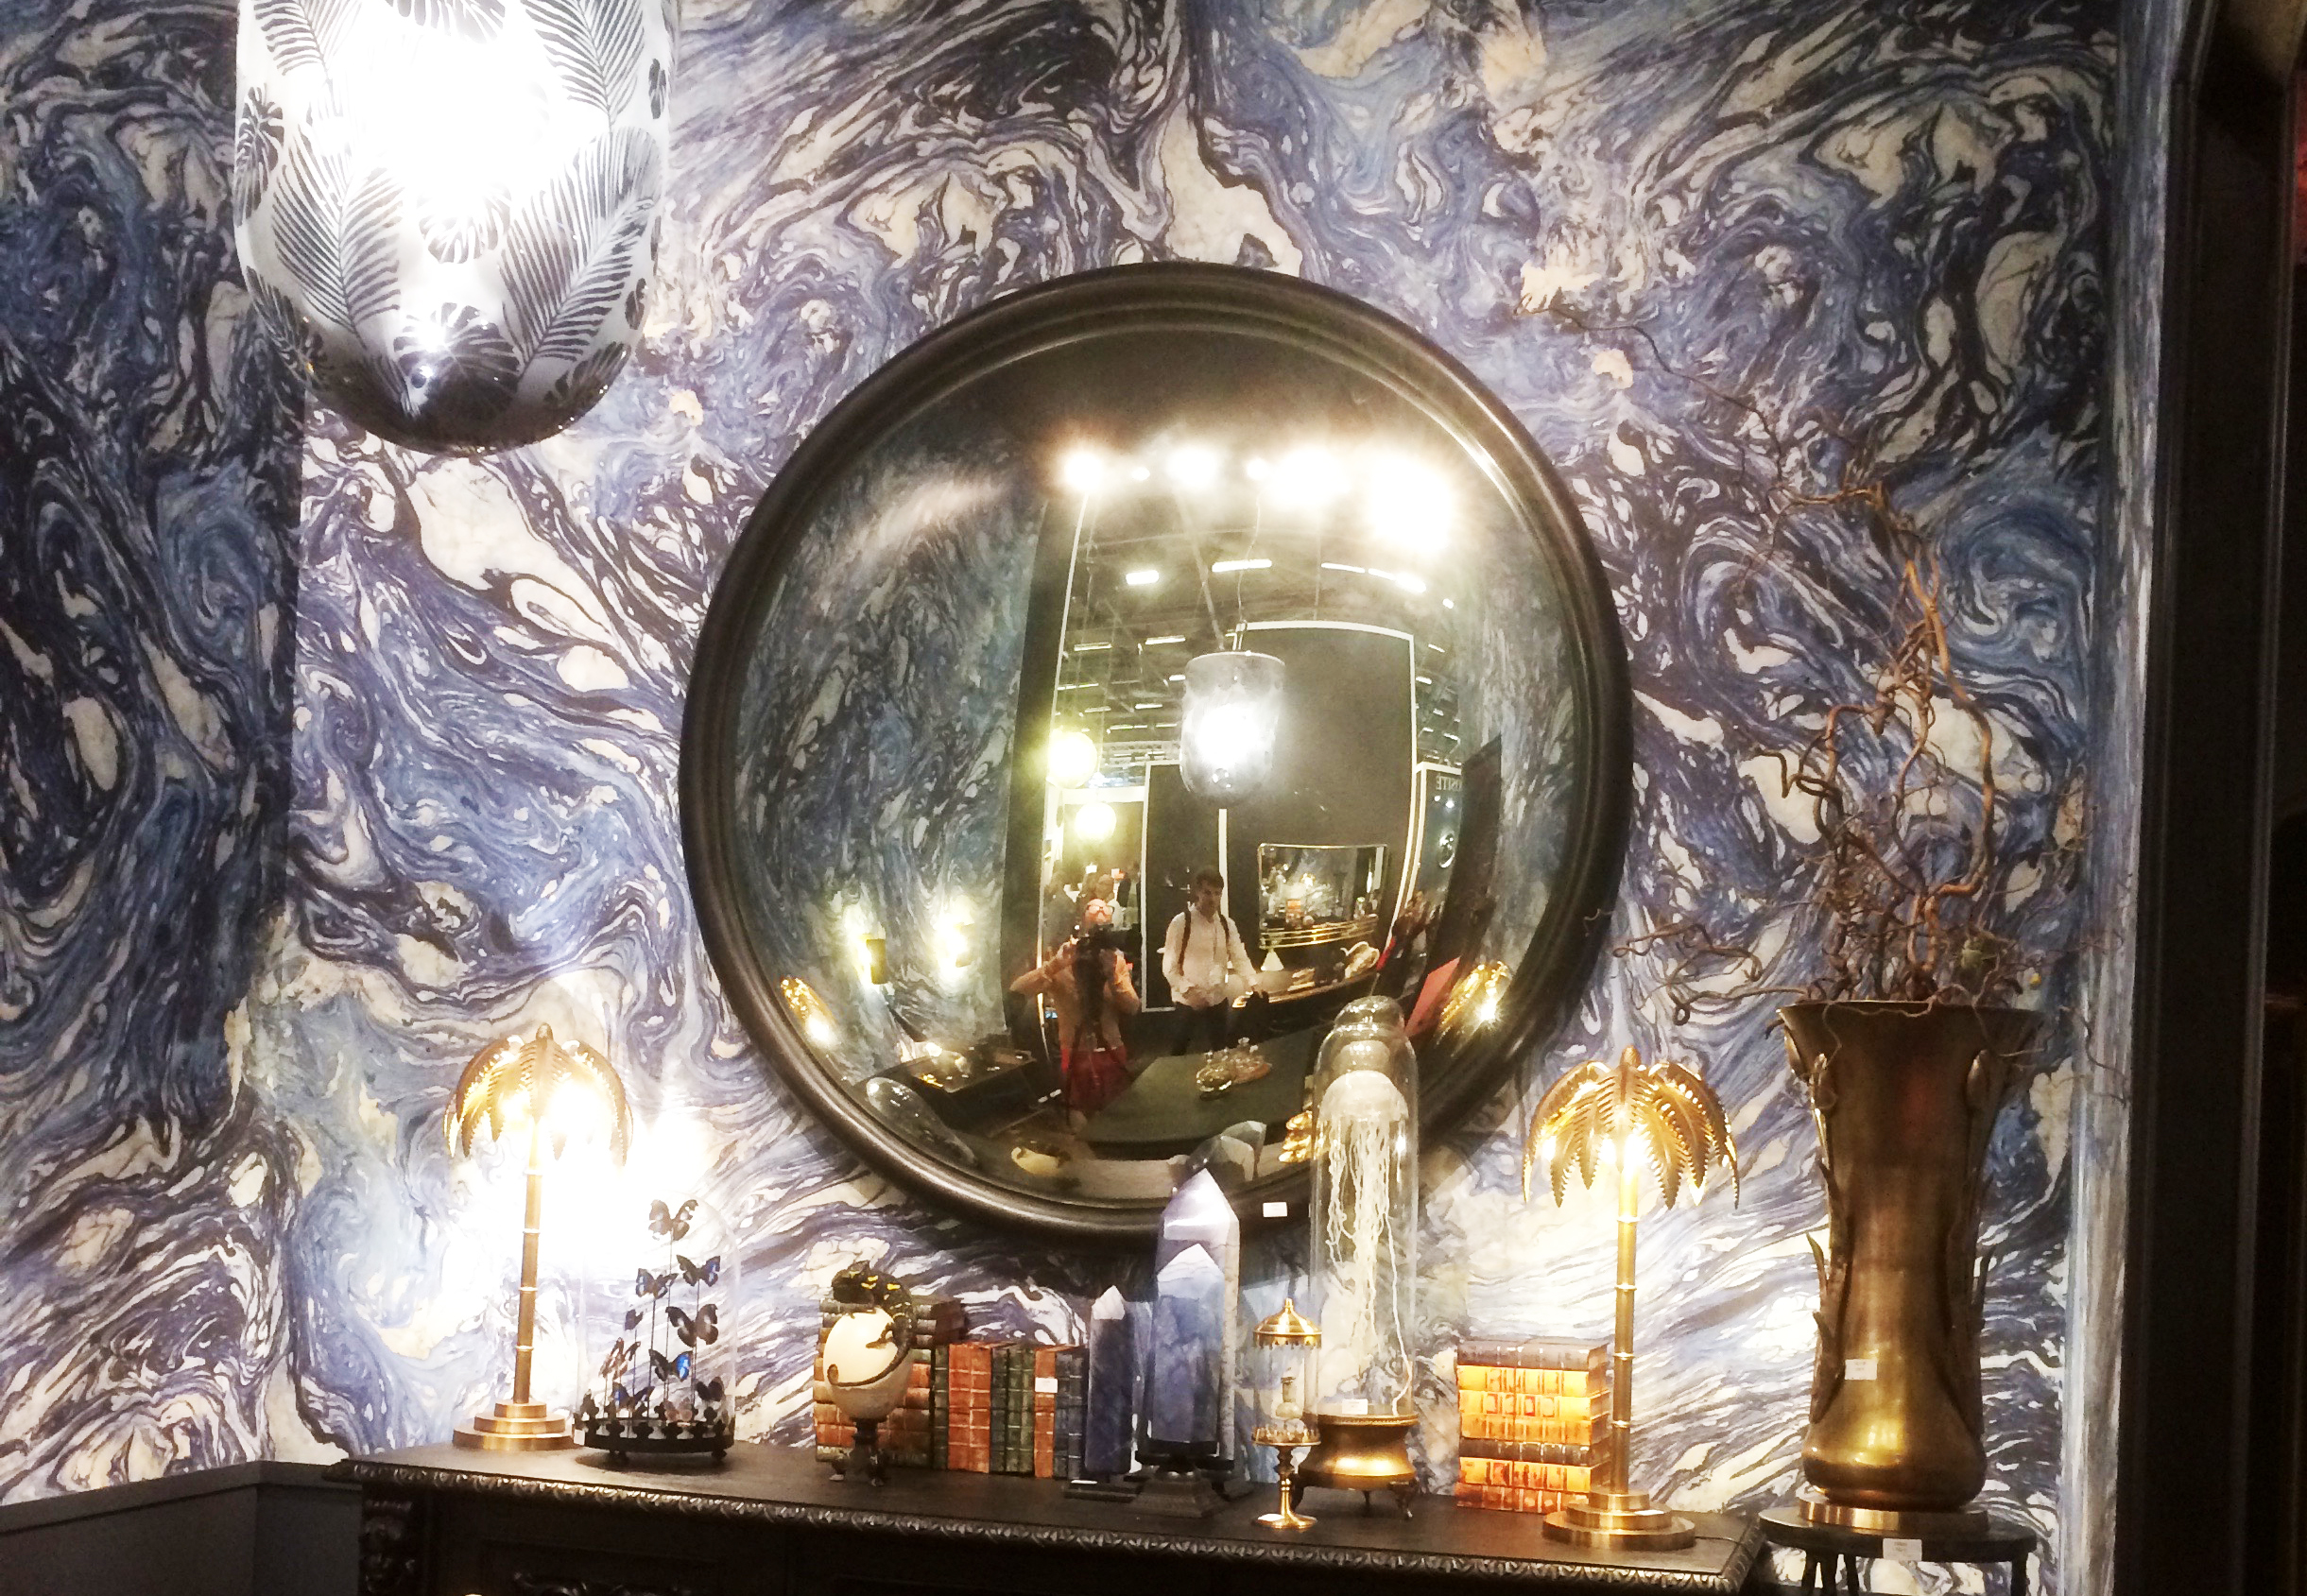 Grand motif d'encre, miroirs de sorcières et accumulation d'objets étranges - le cabinet de curiosités version 2019